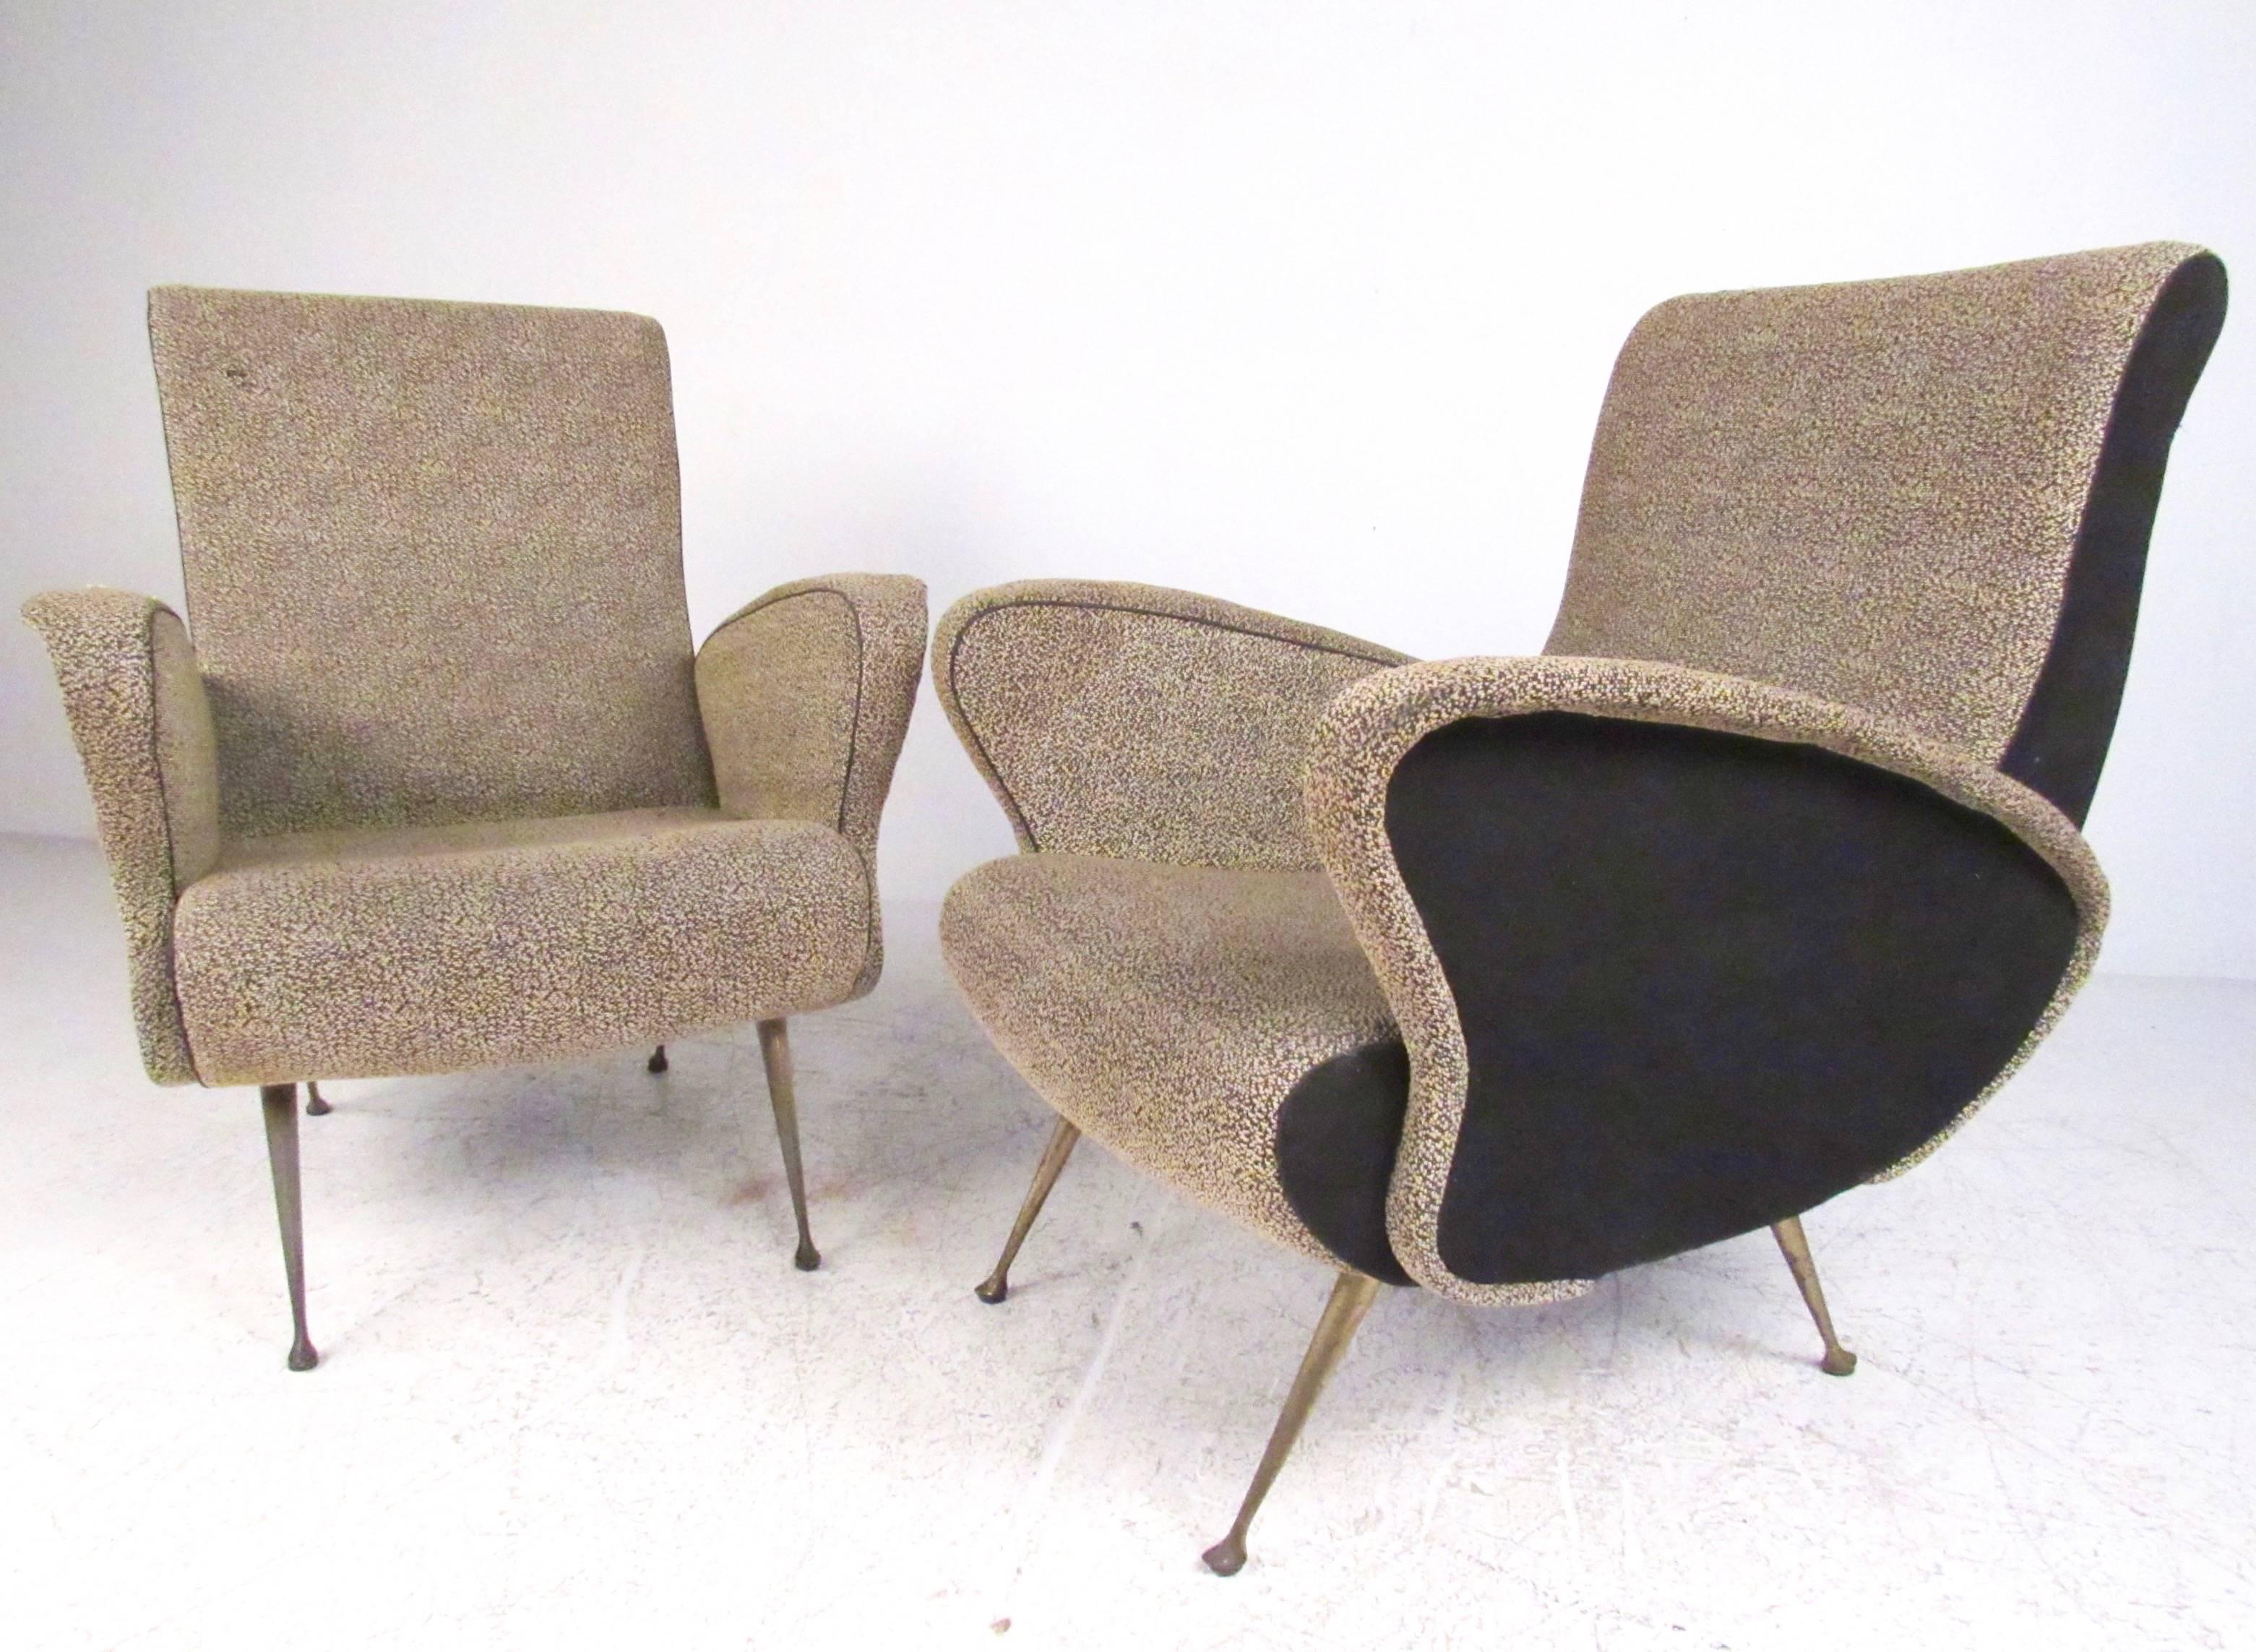 Cette élégante paire de chaises de salon modernes italiennes présente des cadres sculptés avec un rembourrage vintage et des pieds en laiton effilés uniques. Le tissu bicolore ajoute aux lignes élégantes de ce fauteuil de style Gio Ponti. Veuillez